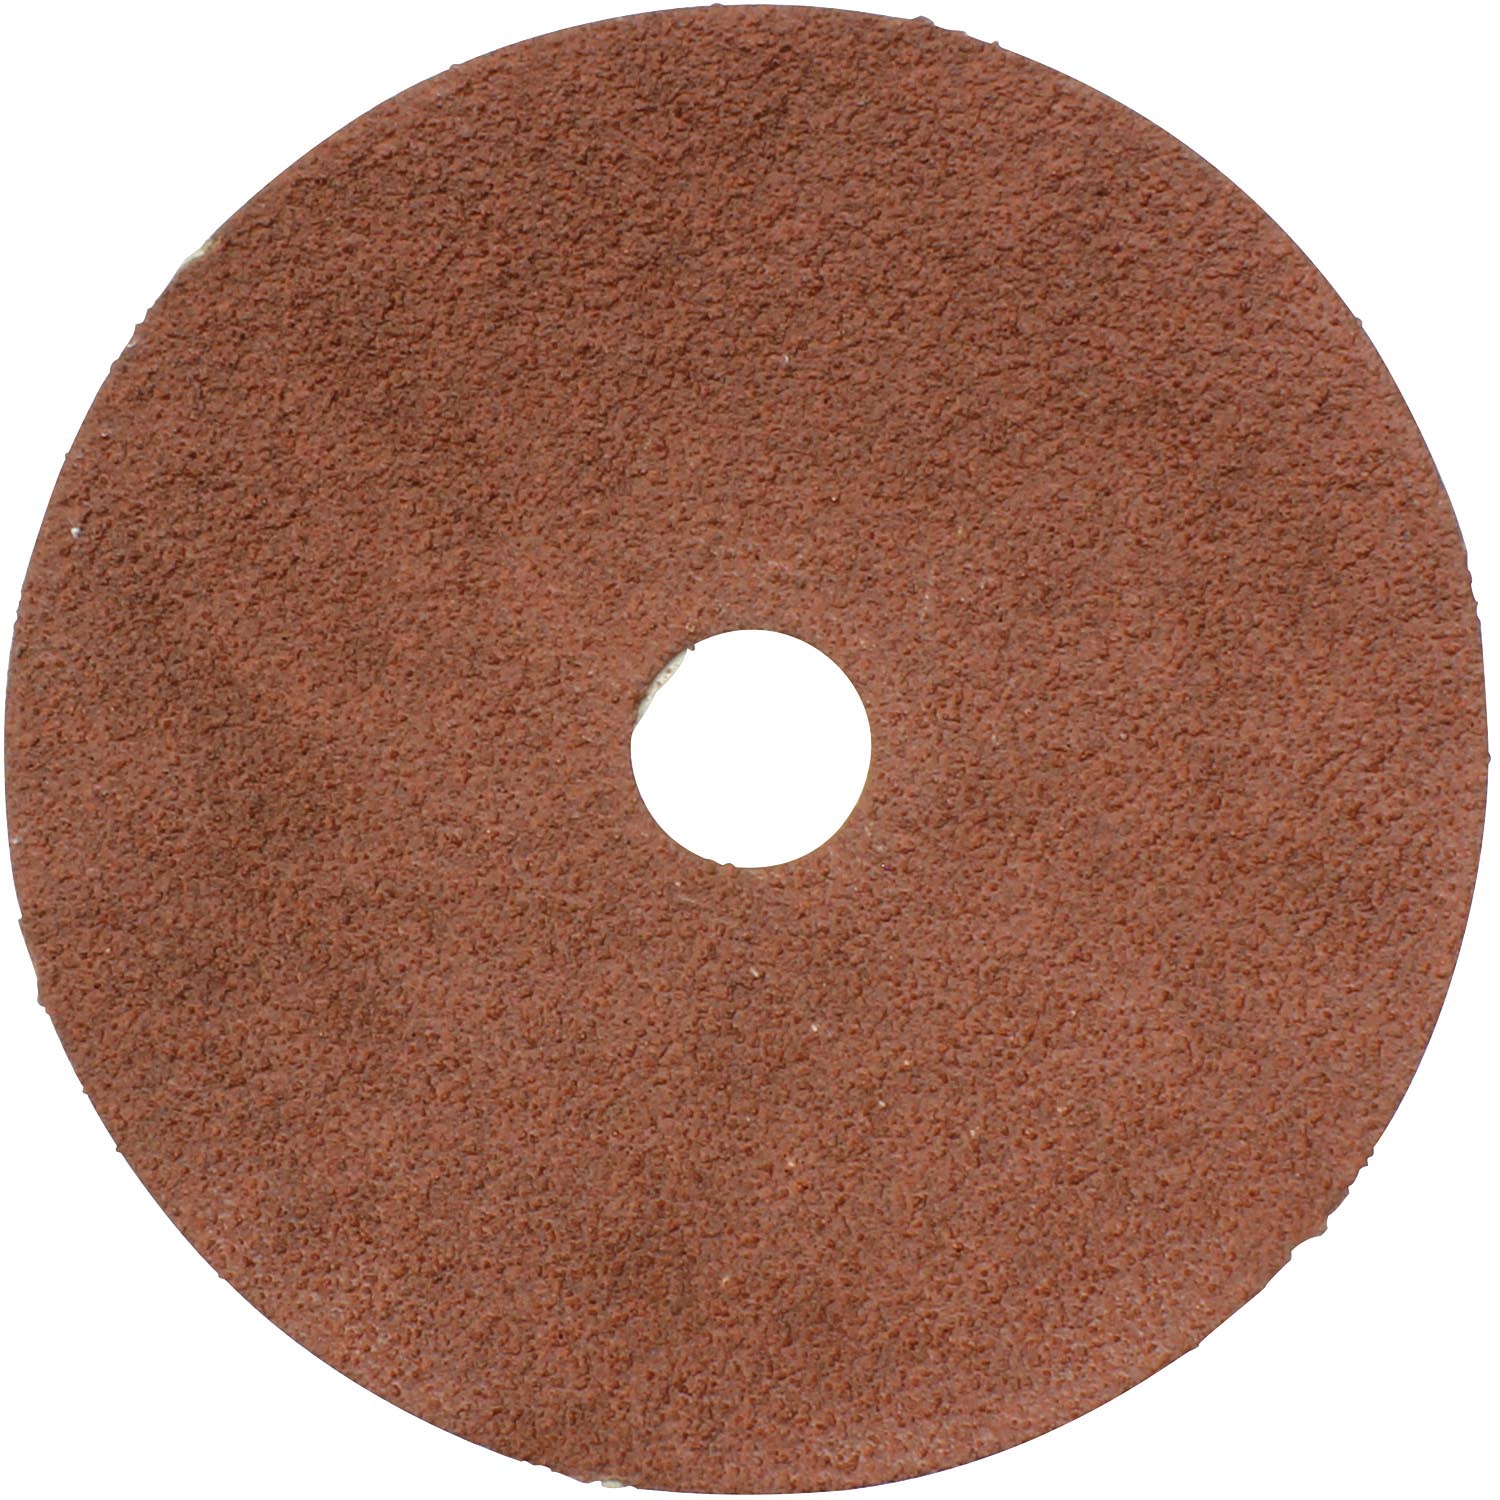 Makita 742039-B-25 Abrasive Disc, 4 in Dia, 5/8 in Arbor, 80 Grit, Fiber Backing - 1